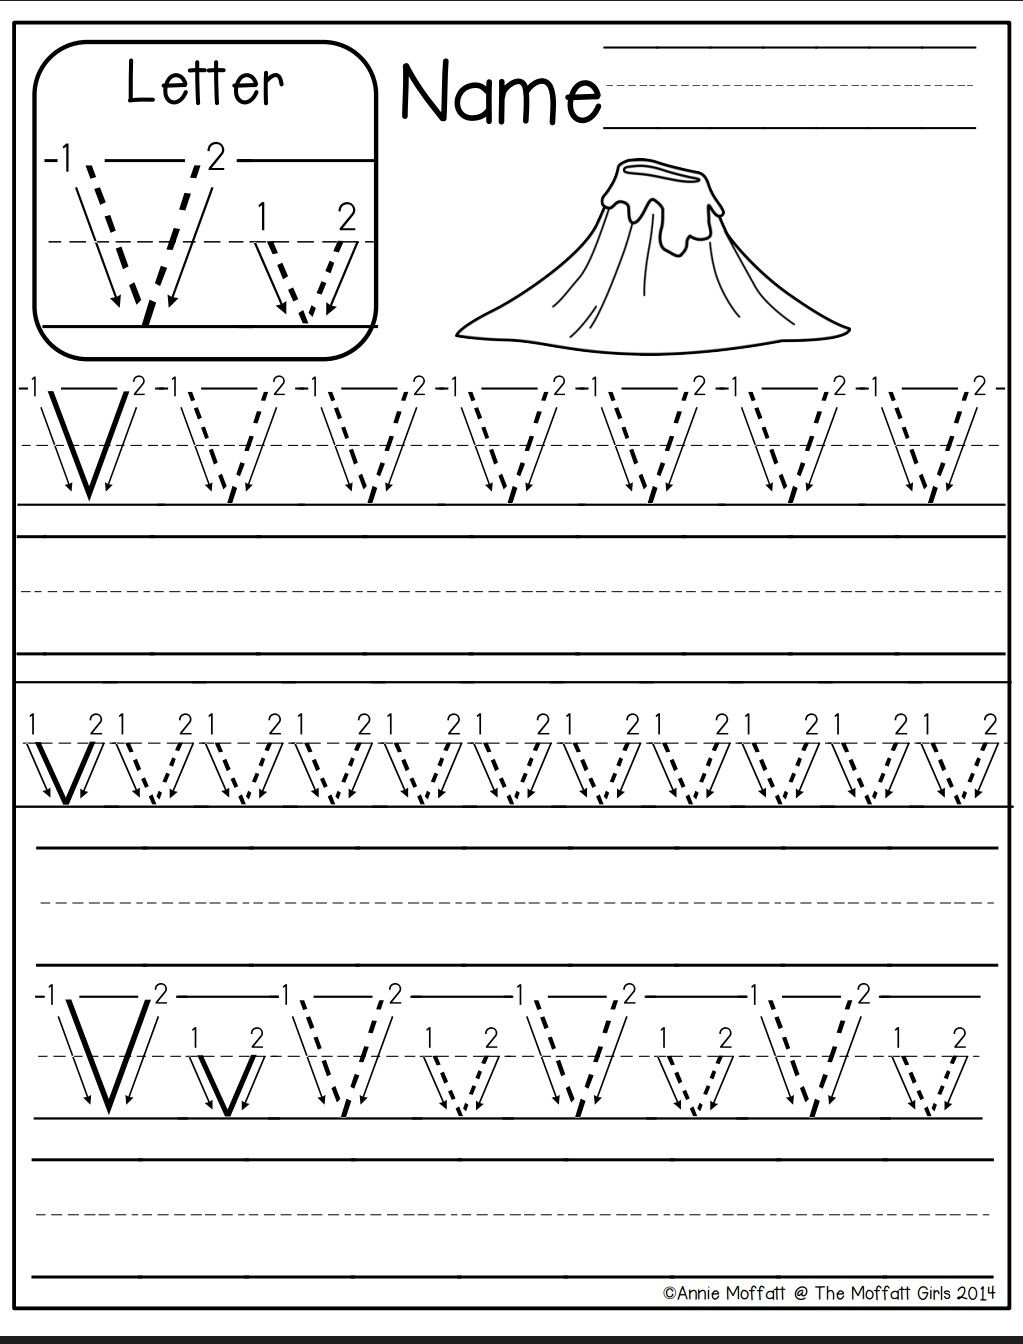 Letter V Worksheet | Preschool Writing, Kindergarten intended for Letter V Worksheets For Kindergarten